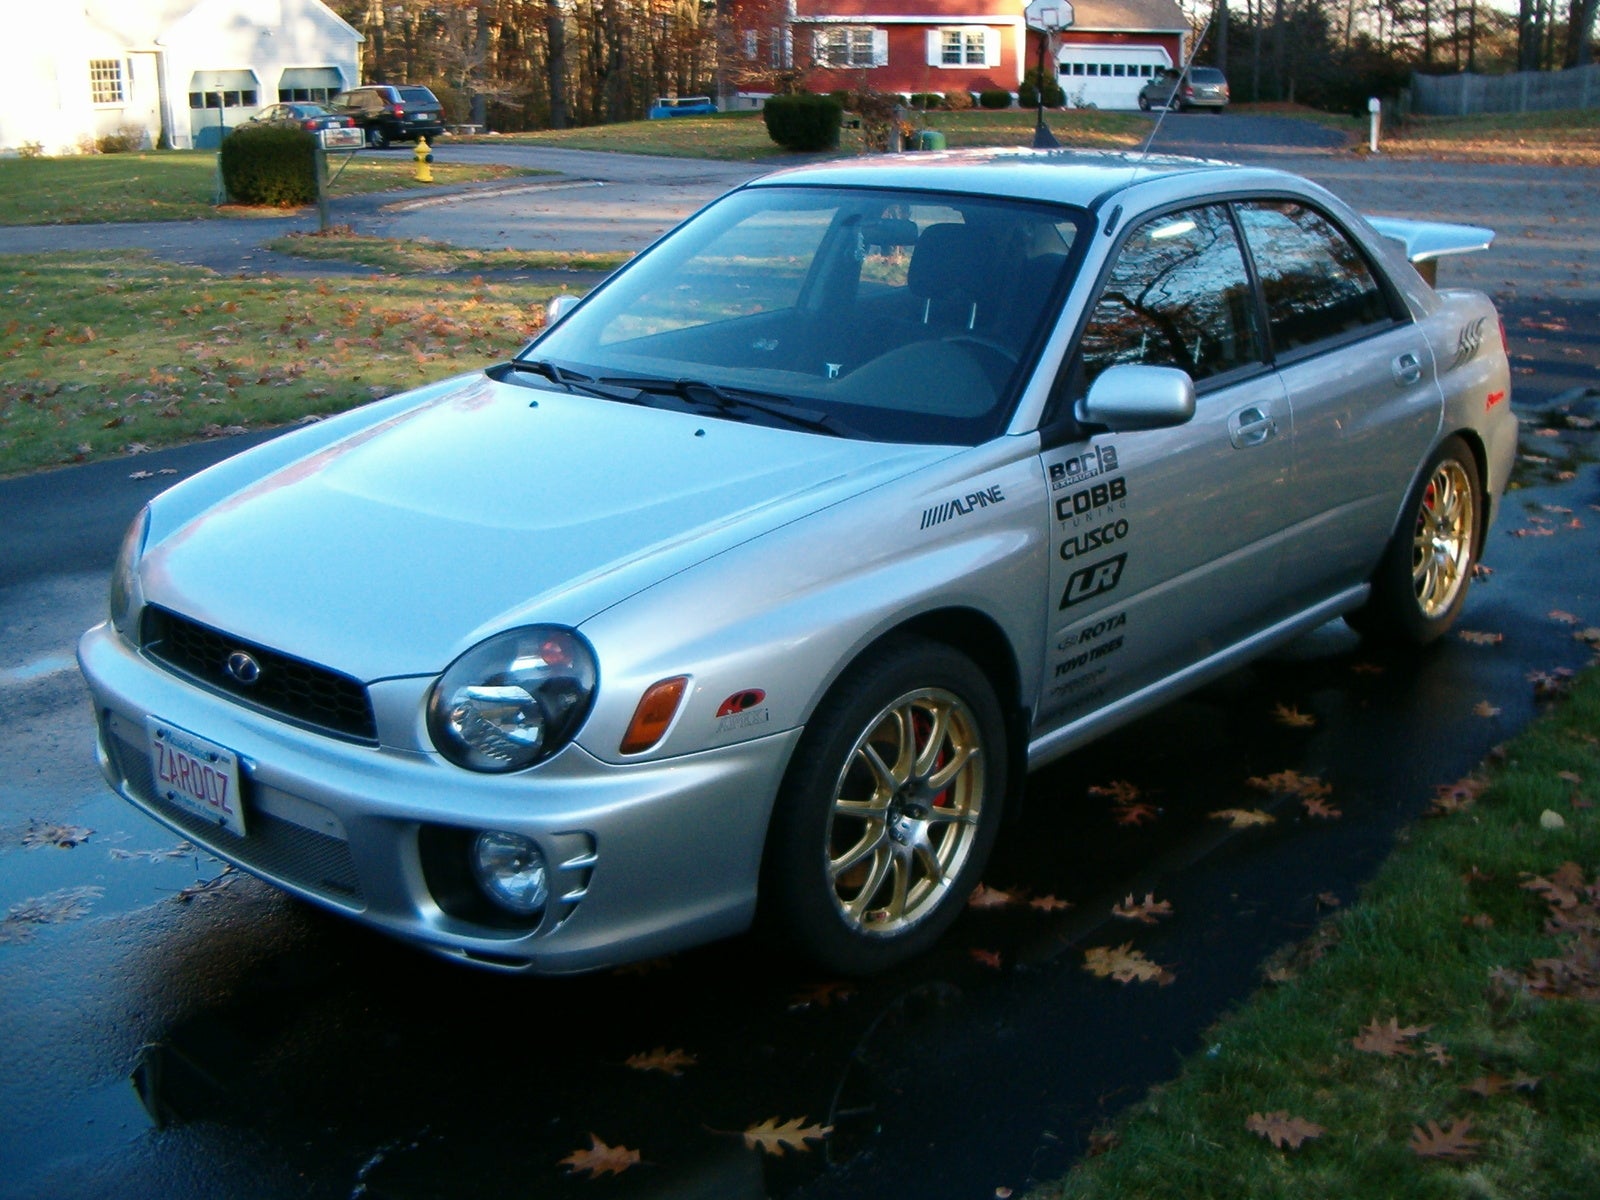 2002 Subaru Impreza Exterior Pictures CarGurus